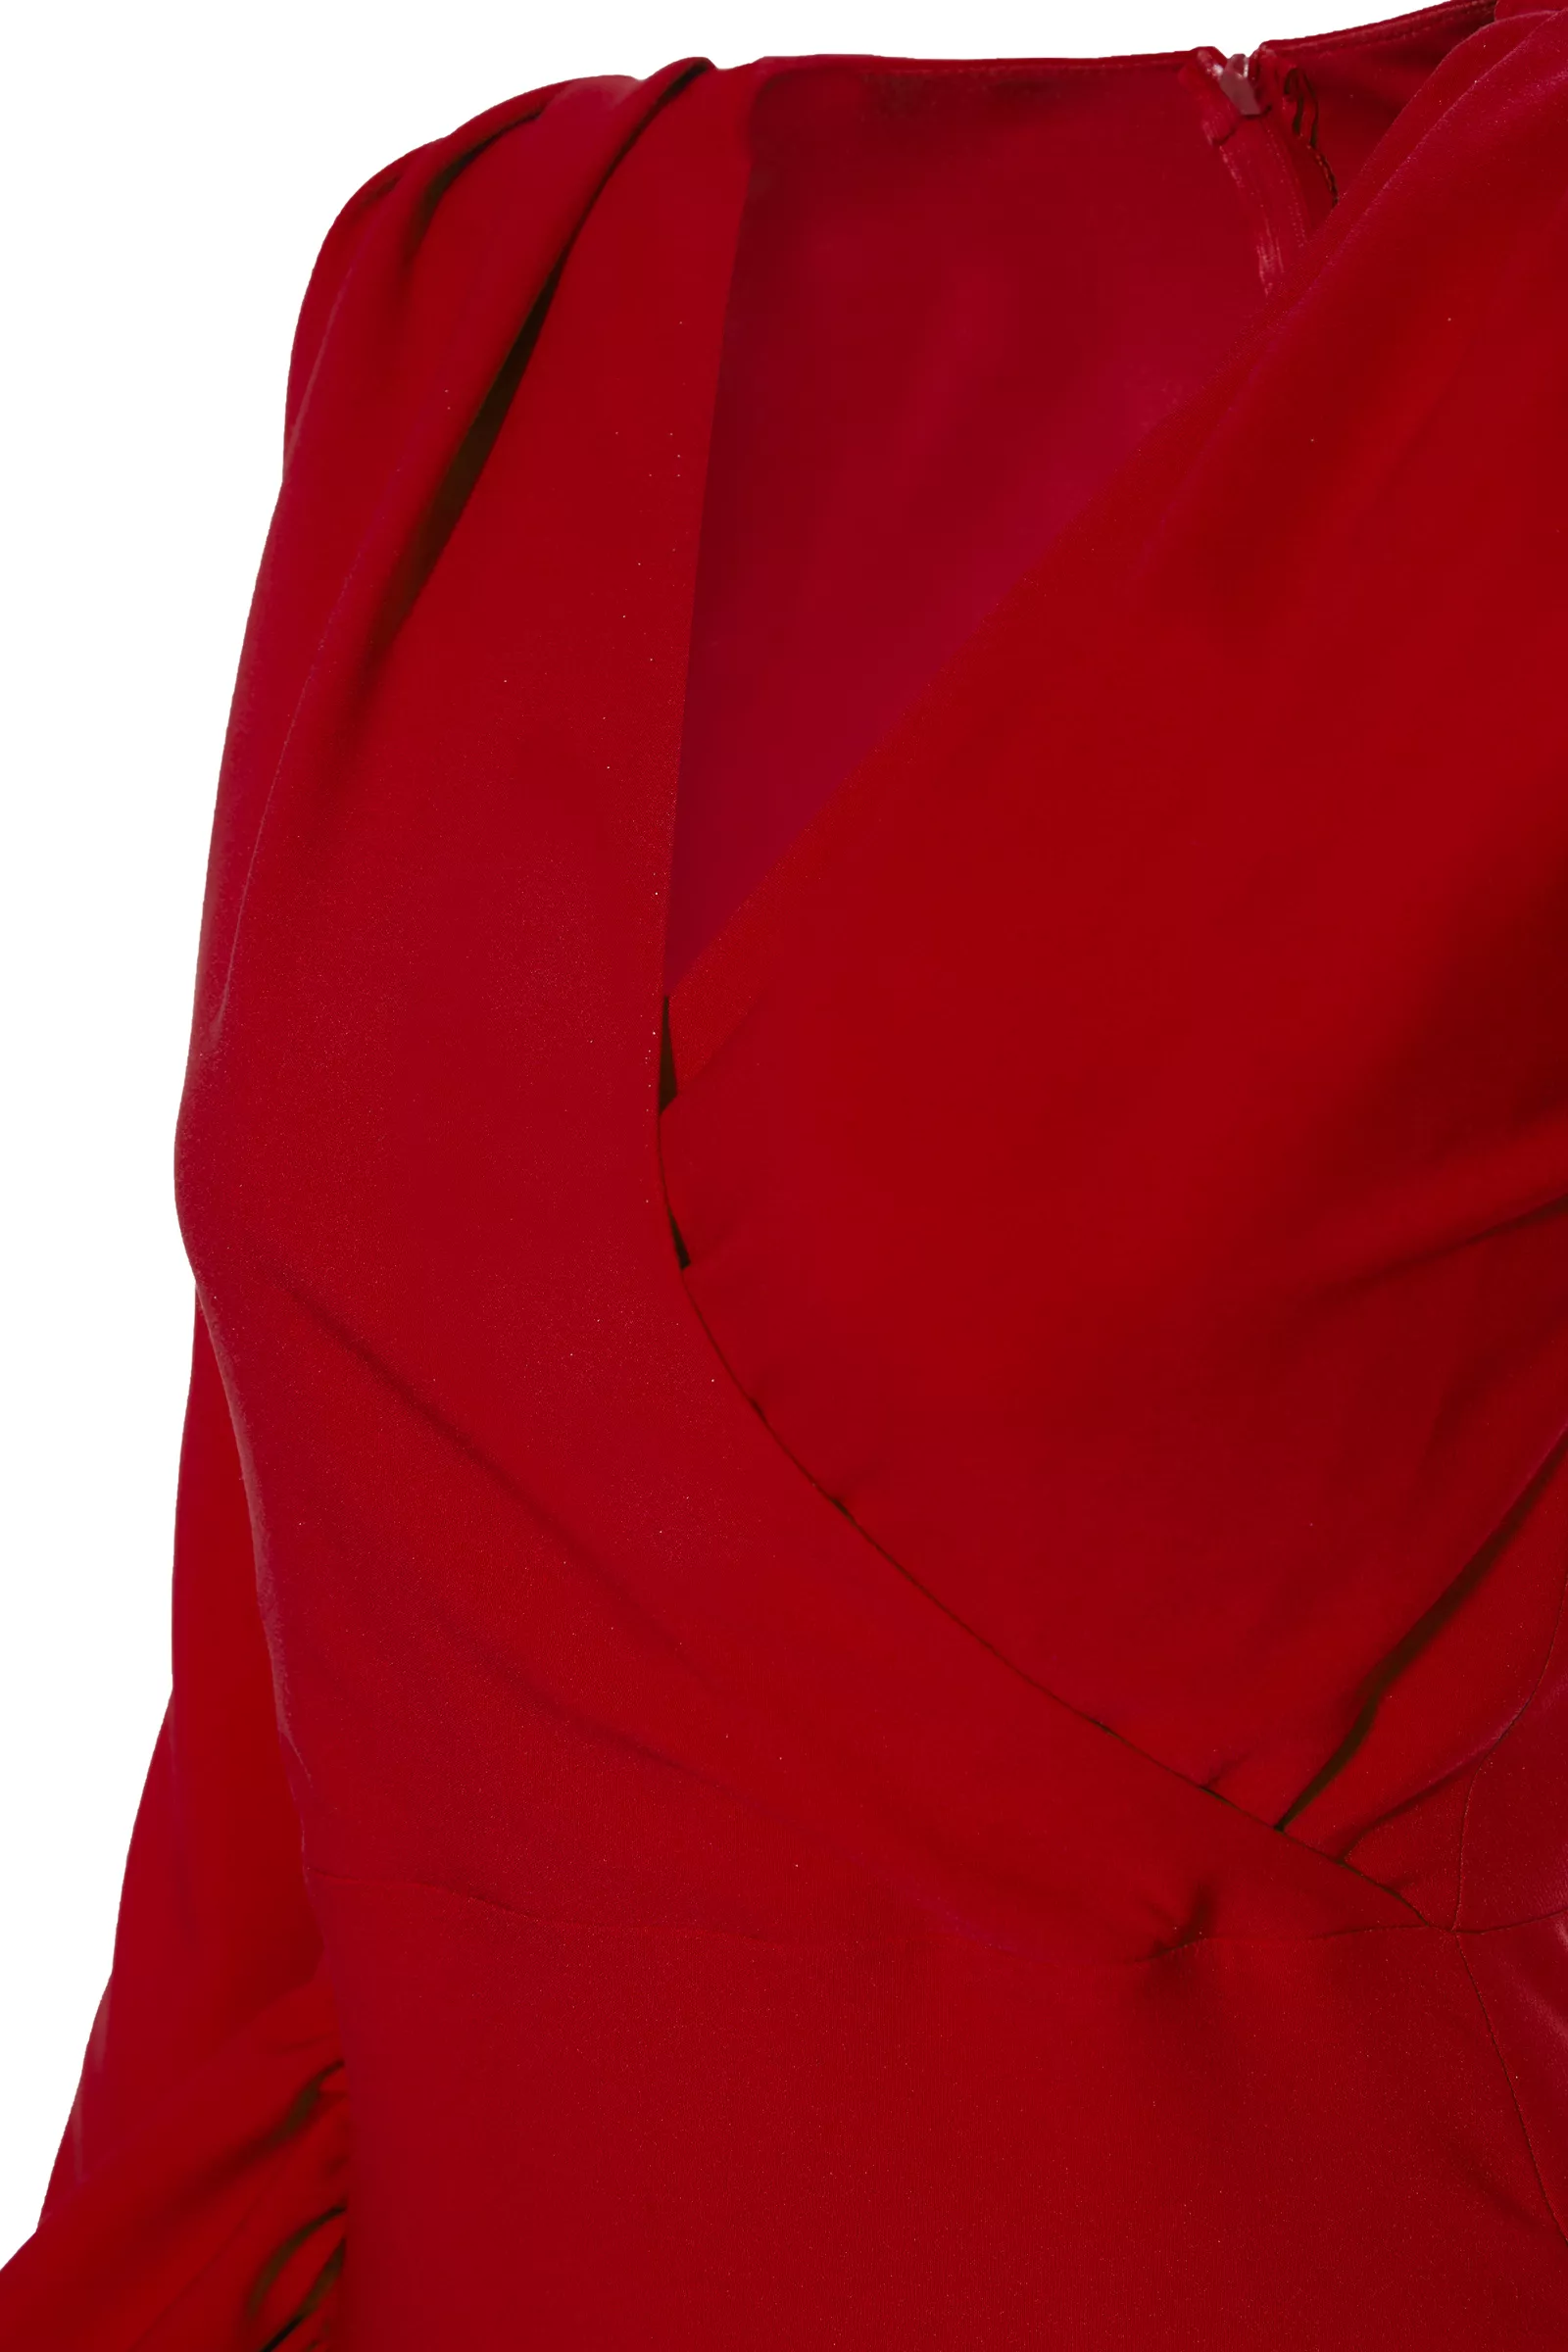 Kırmızı krep uzun kol uzun elbise